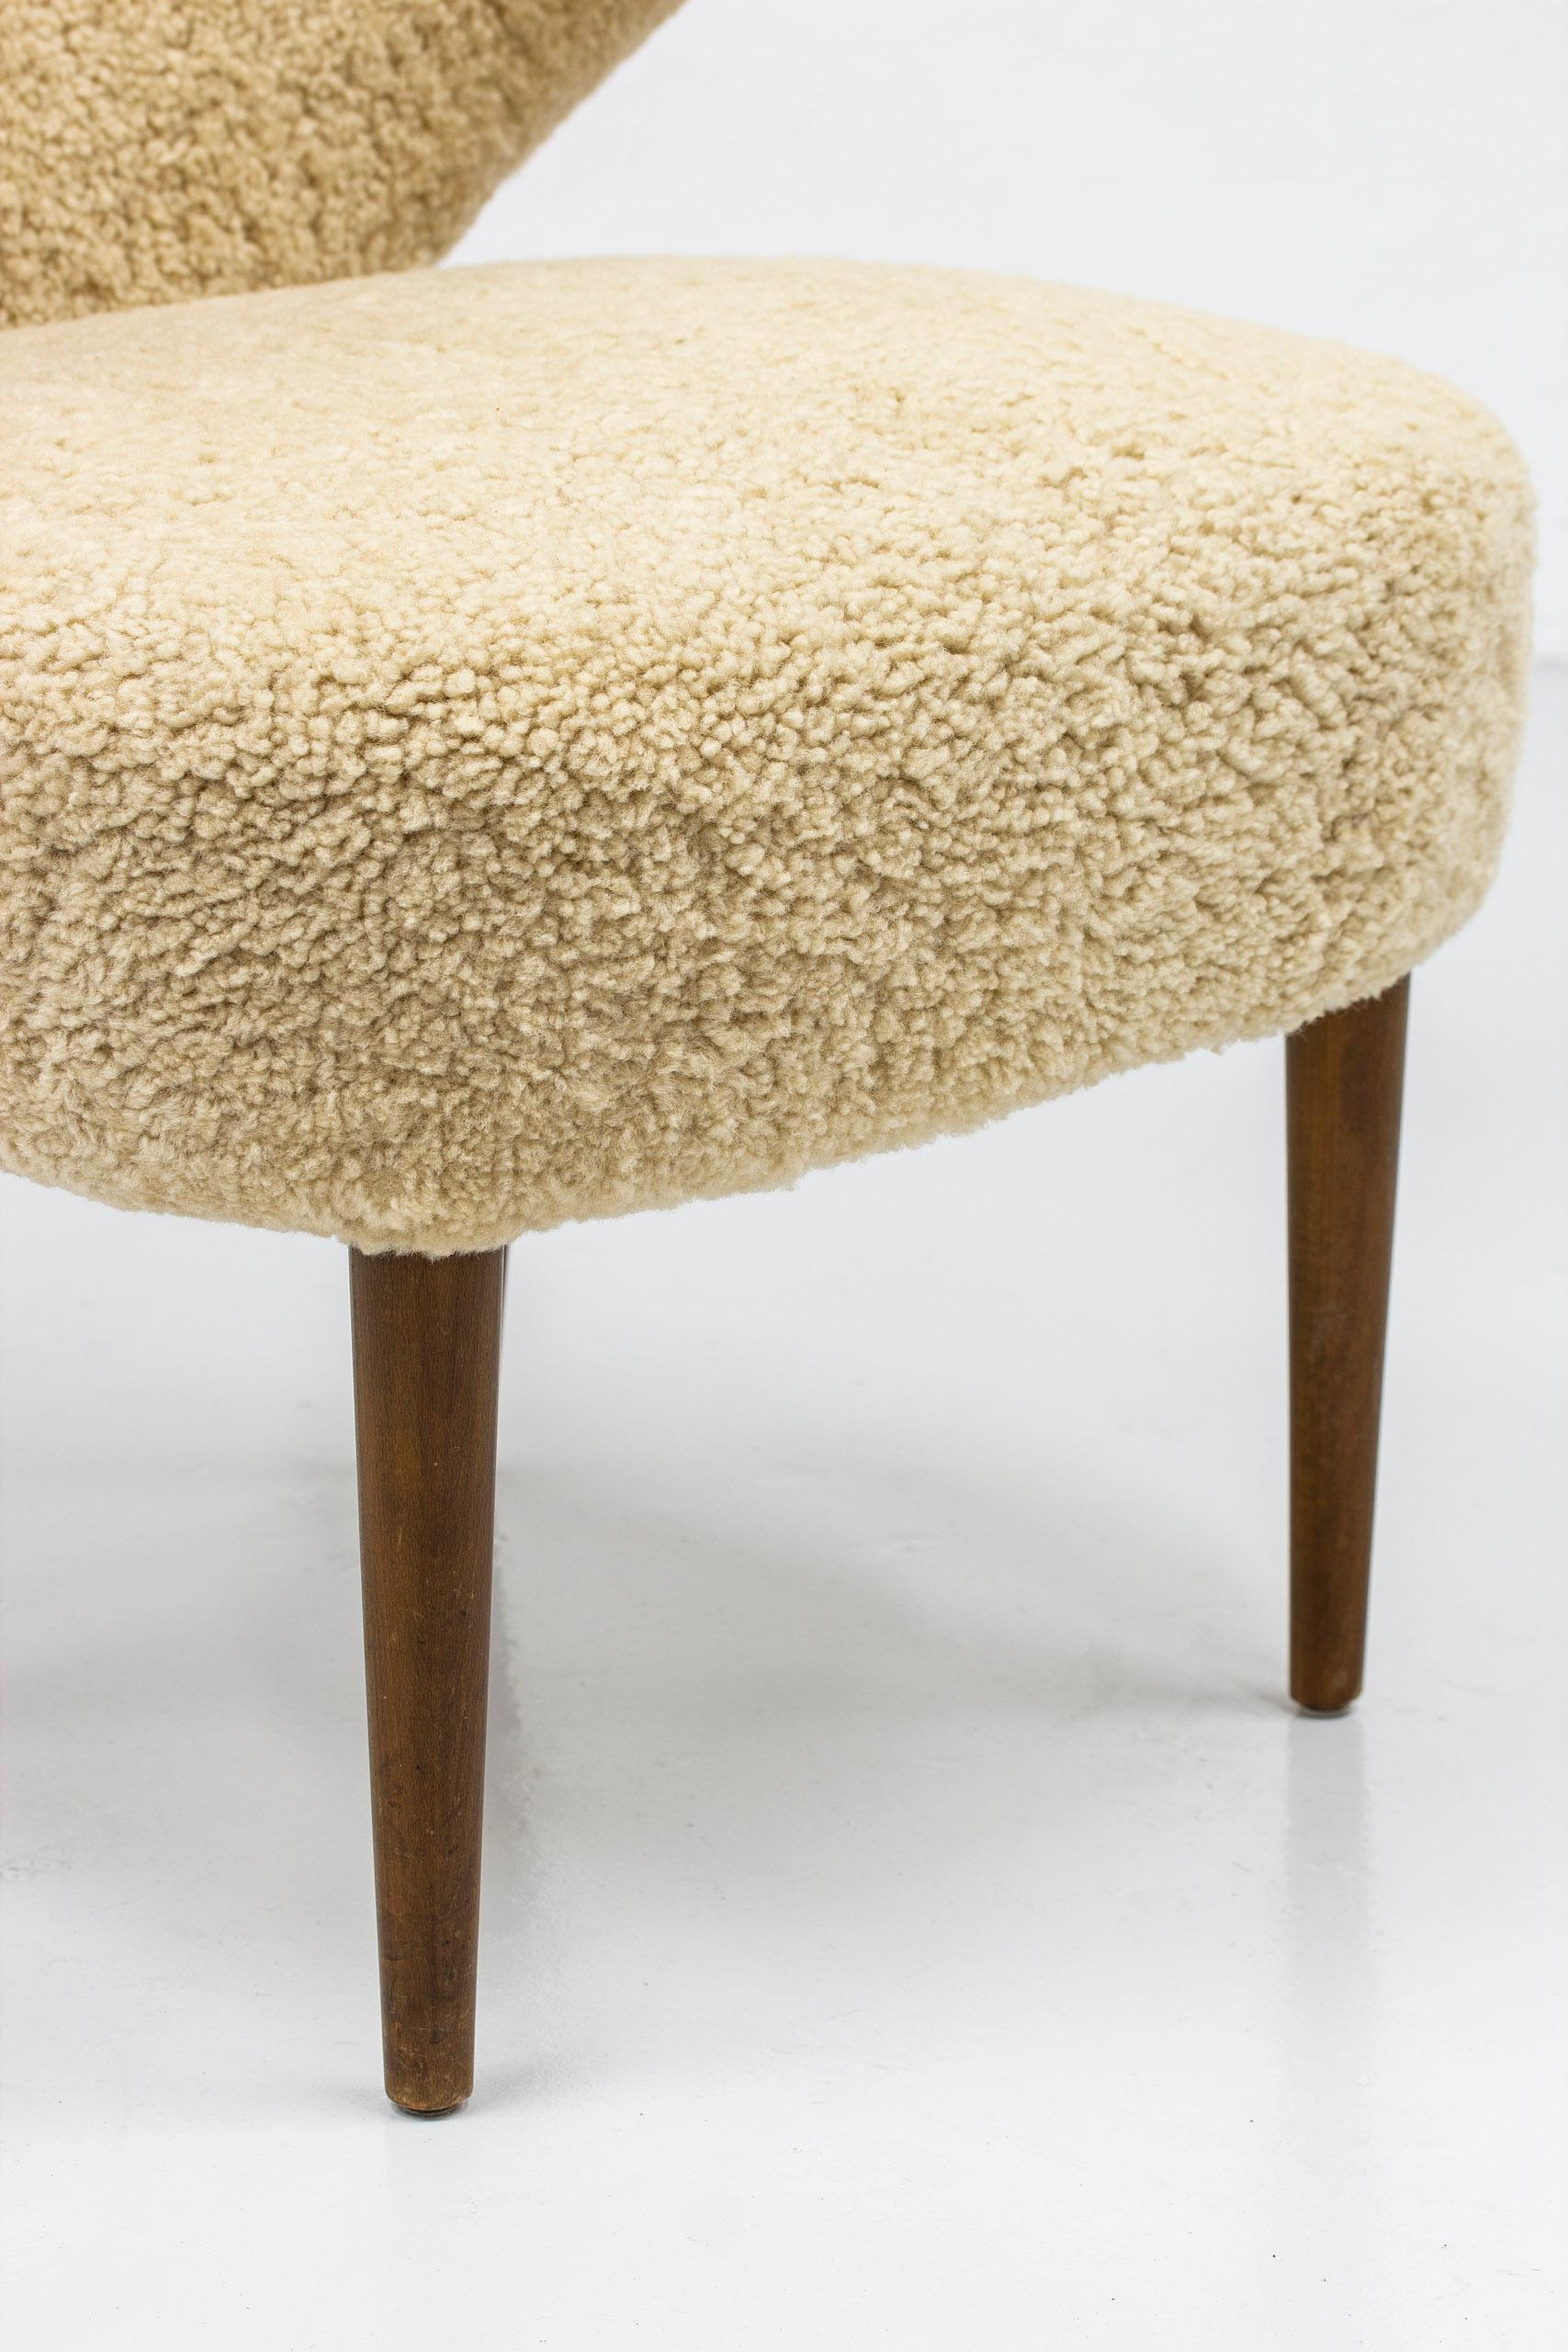 Magnus Stephensen 'Attributed' Lounge Chair Beige Sheepskin Beech Denmark, 1950s For Sale 1